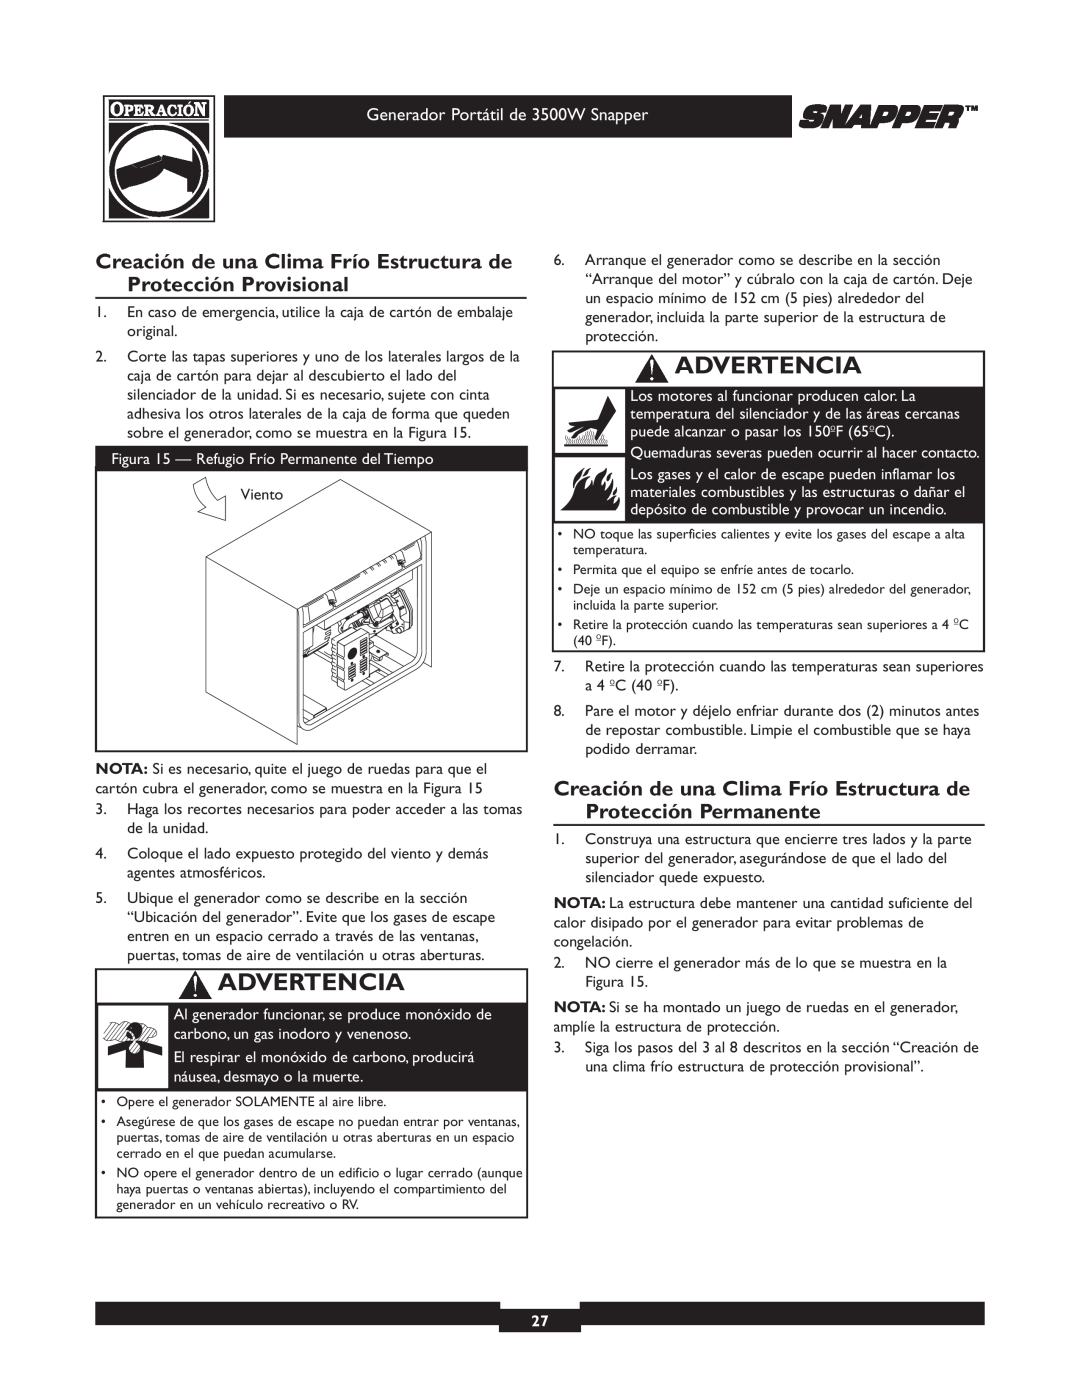 Snapper 030214 manual Creación de una Clima Frío Estructura de Protección Provisional, Advertencia 